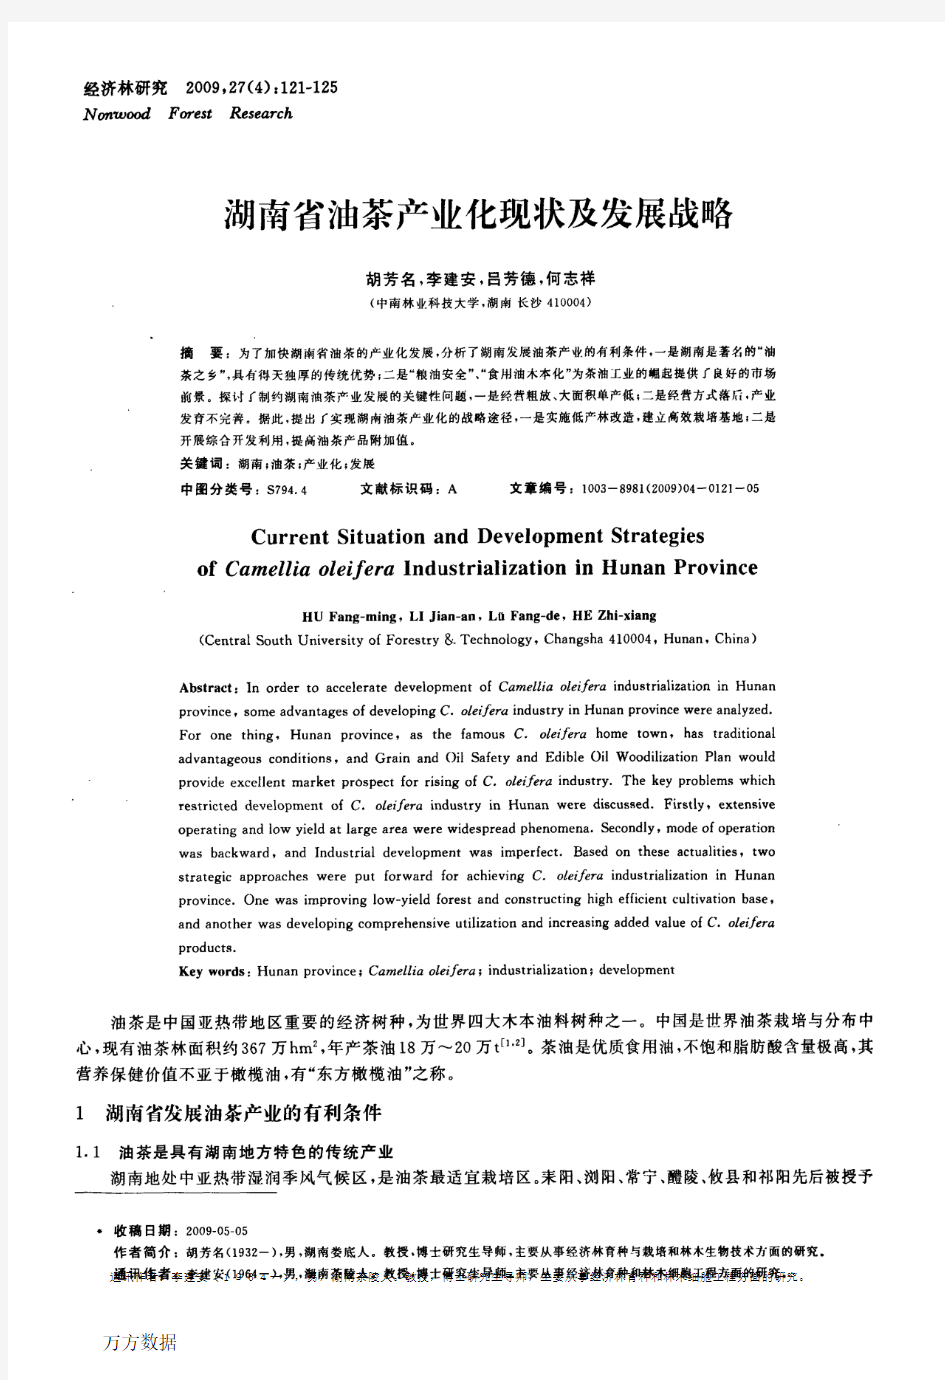 湖南省油茶产业化现状及发展战略